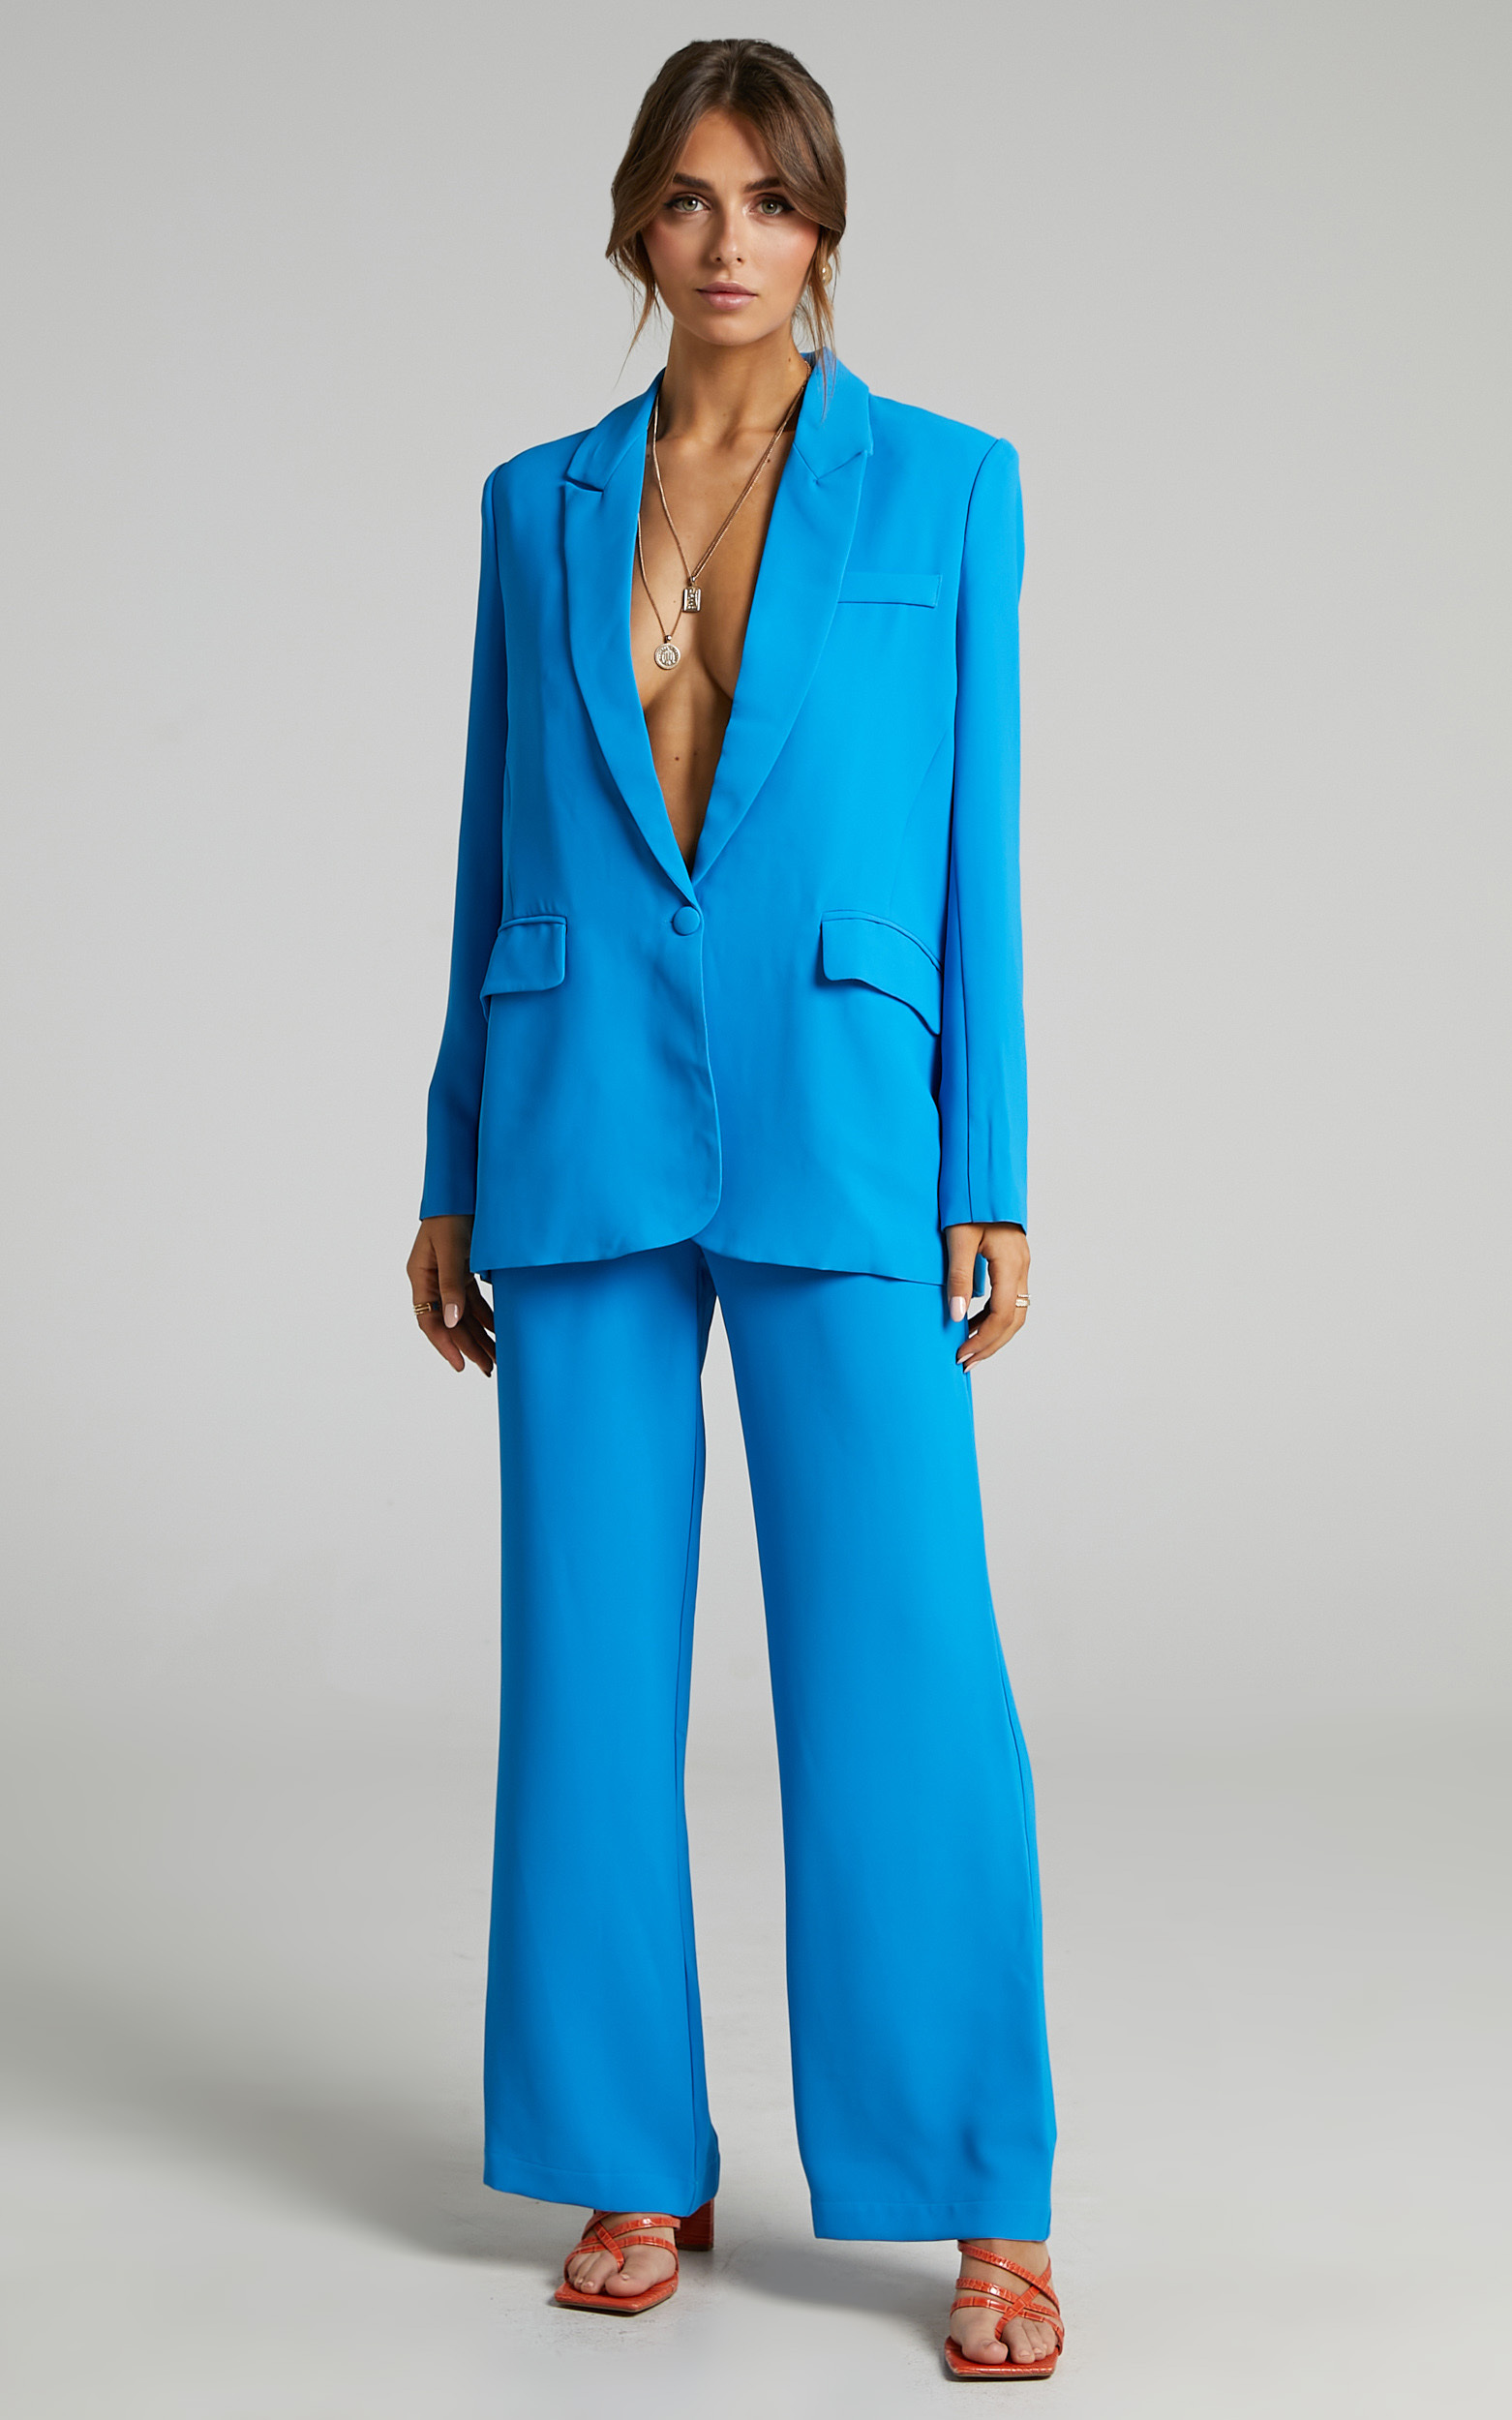 Michelle Oversized Plunge Neck Button Up Blazer in Blue | Showpo